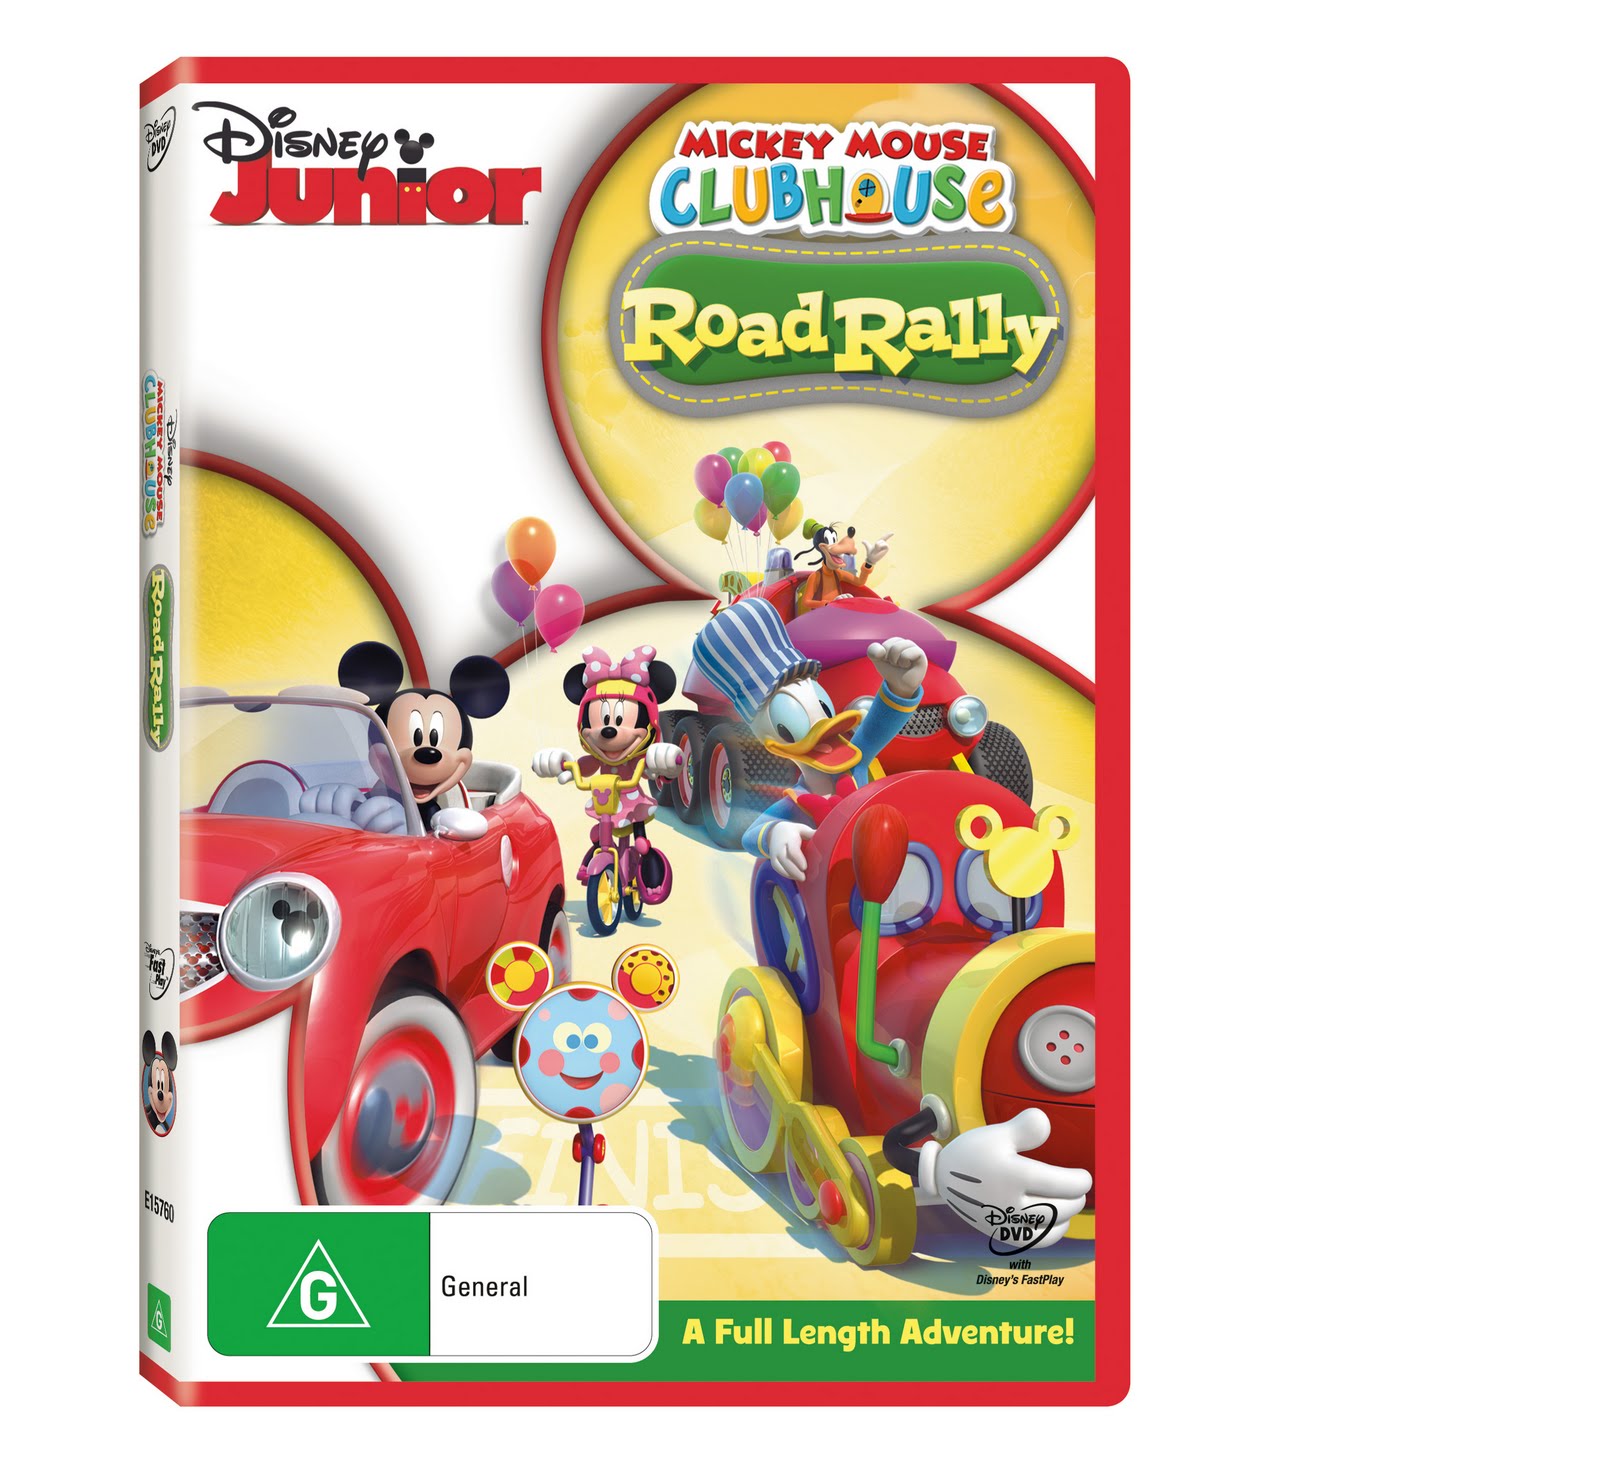 https://blogger.googleusercontent.com/img/b/R29vZ2xl/AVvXsEgTPDosZS2zW9FNm4pZuiYoVH81C4ElP8wmmOR92WwtqtouB7Lc2BEXCTRBylZCBvkUJUSMMnzUlKlnINrl5ZaJ57DvONPLHx8bvBoQFnnzQTyfX4gXWhyphenhyphenLVygyHBBH9cPdLR2nK4GyG8Q/s1600/Mickey+Mouse+Clubhouse+-+Road+Rally+Beautyshot.jpg